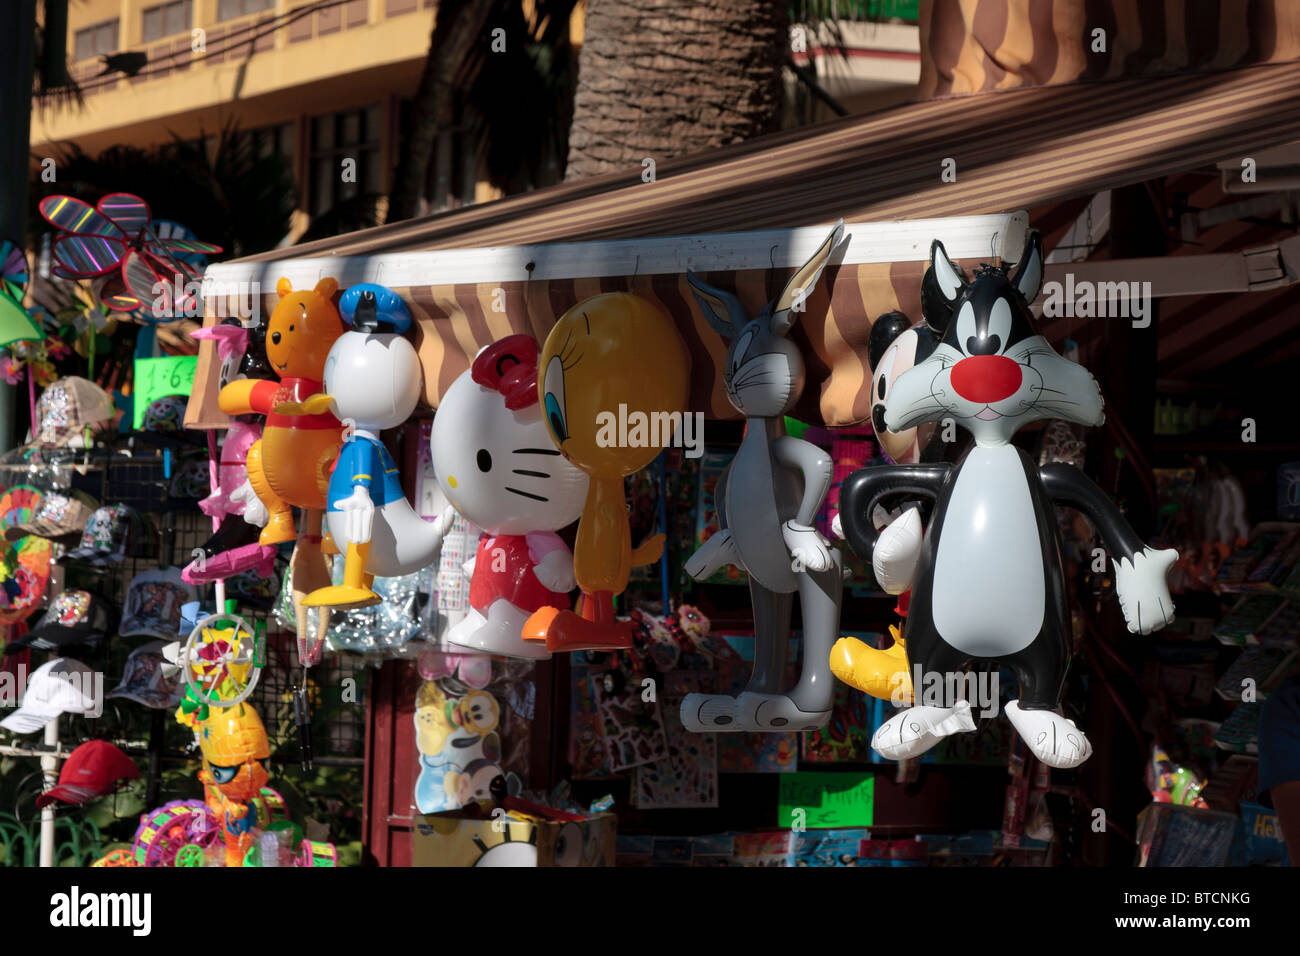 Ballons en forme de personnages de dessins animés s'accrocher un kiosque dans le cadre de la Plaza del Charco à Puerto de La Cruz Tenerife Banque D'Images